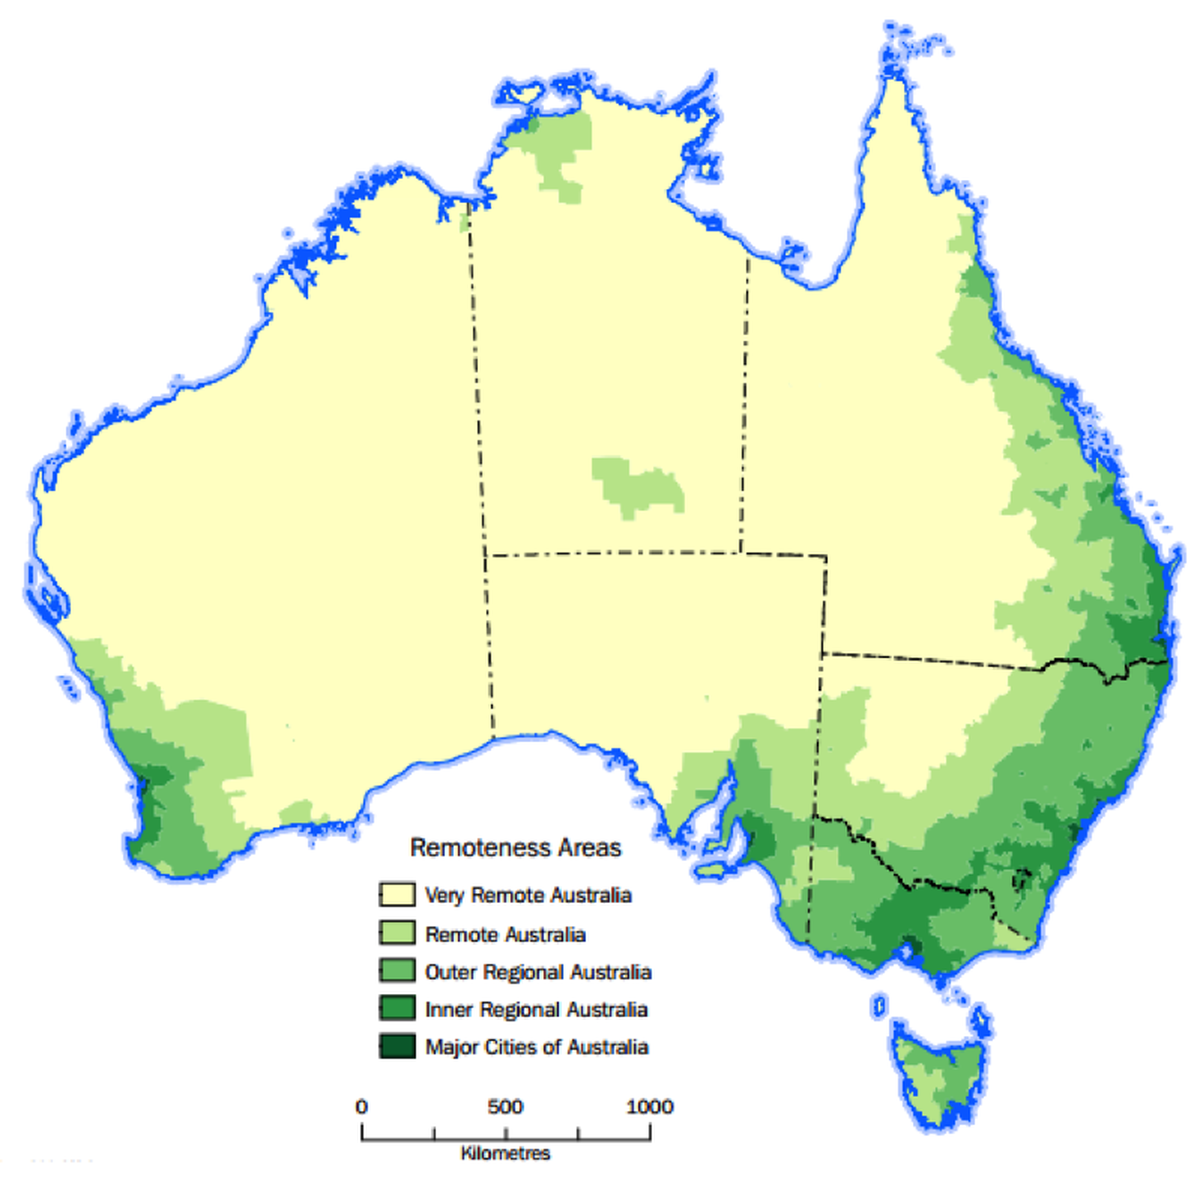 Rural and Remote Australia